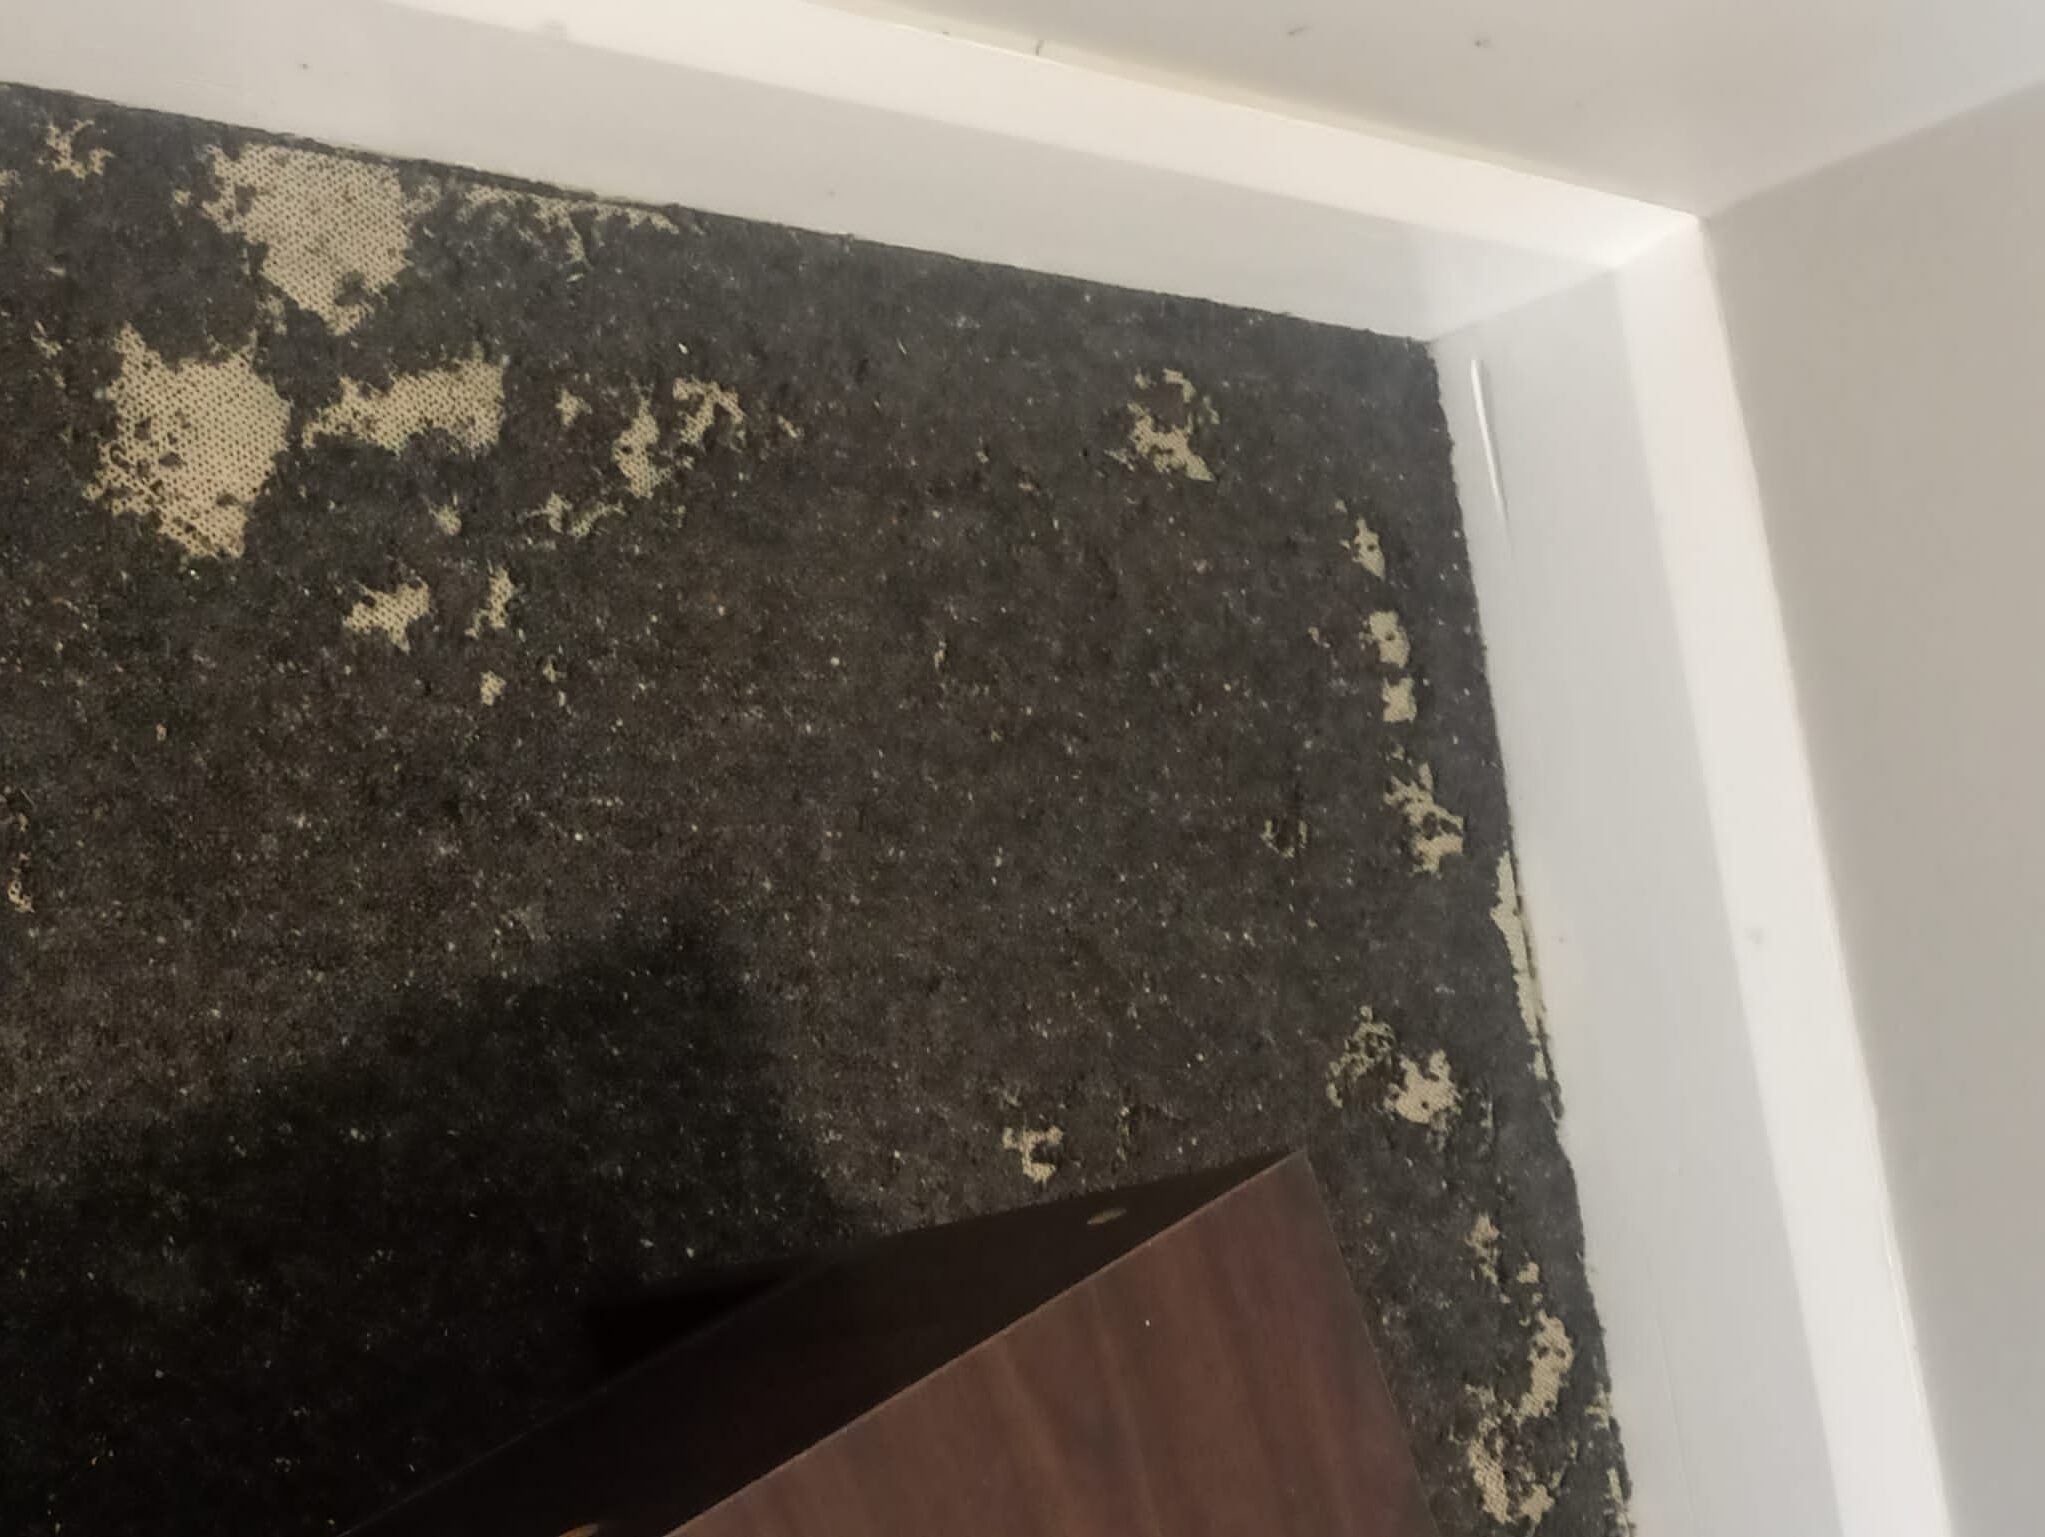 Recent carpet beetle inspection